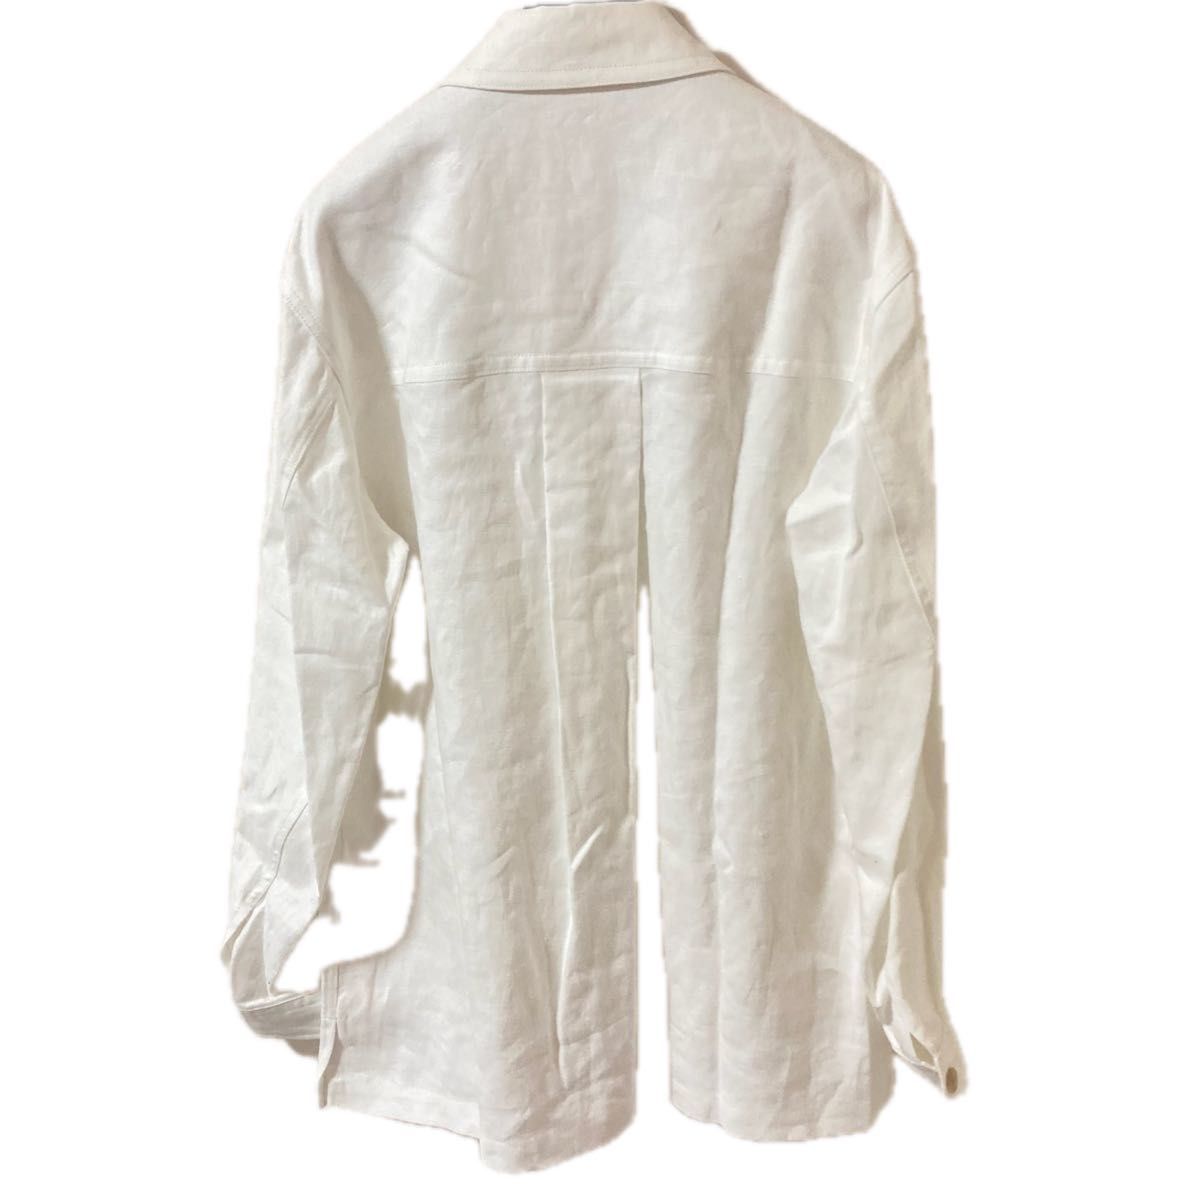 TAKEOKIKUCHI カバーオールジャケット 定価43000 シンプル 白 新品 タケオキクチ 人気 メンズアウター 上着